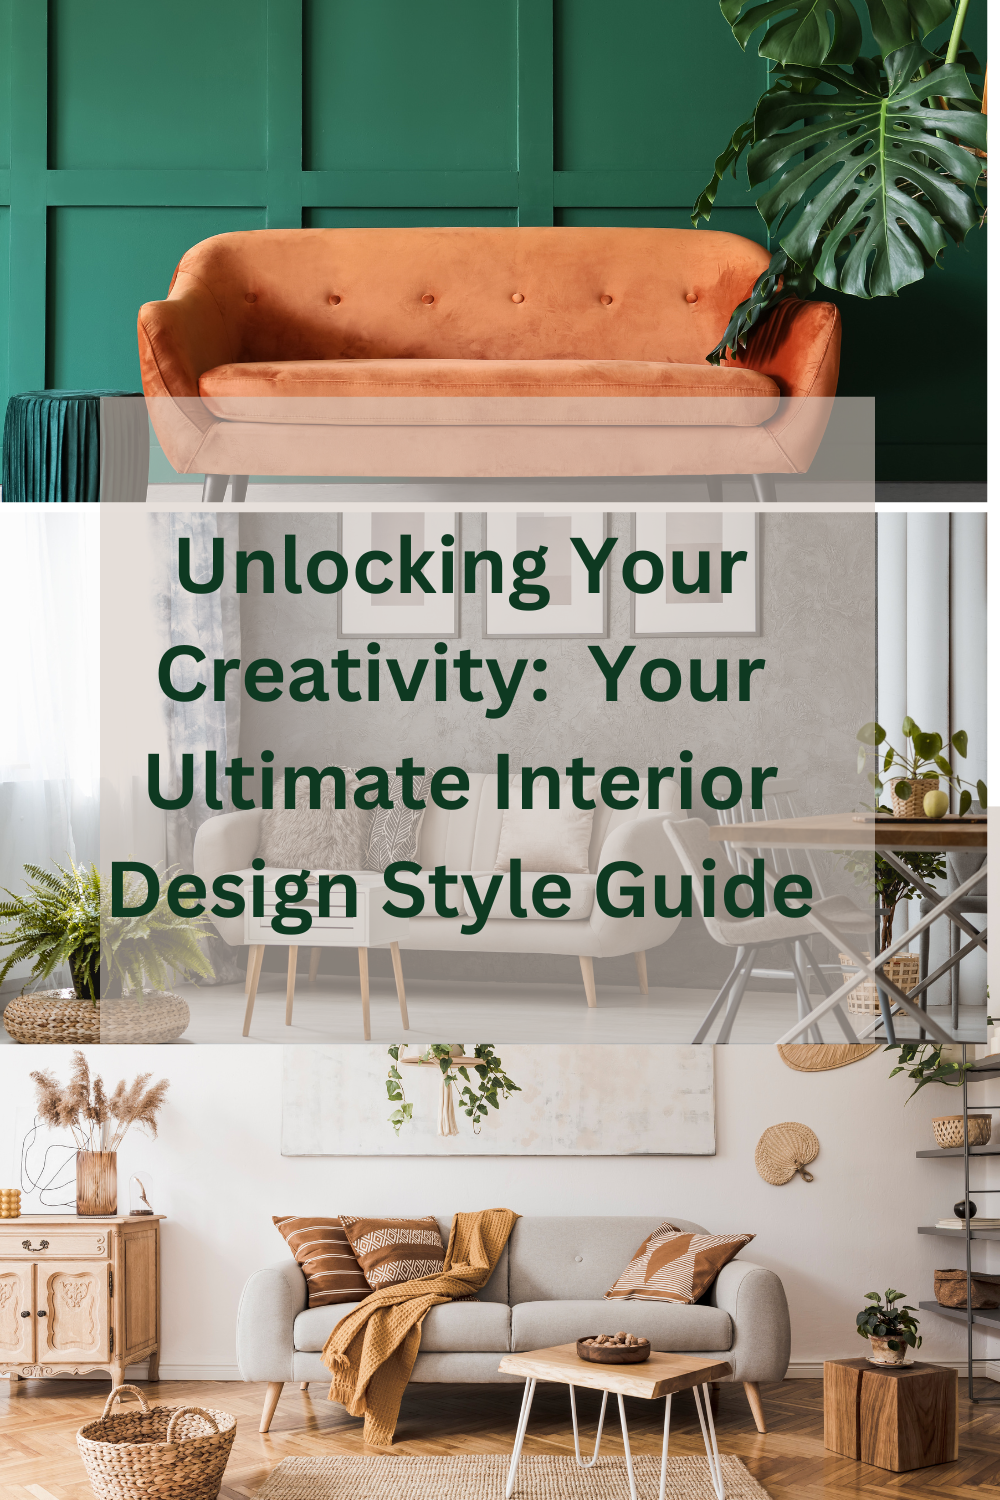 Interior design style Guide